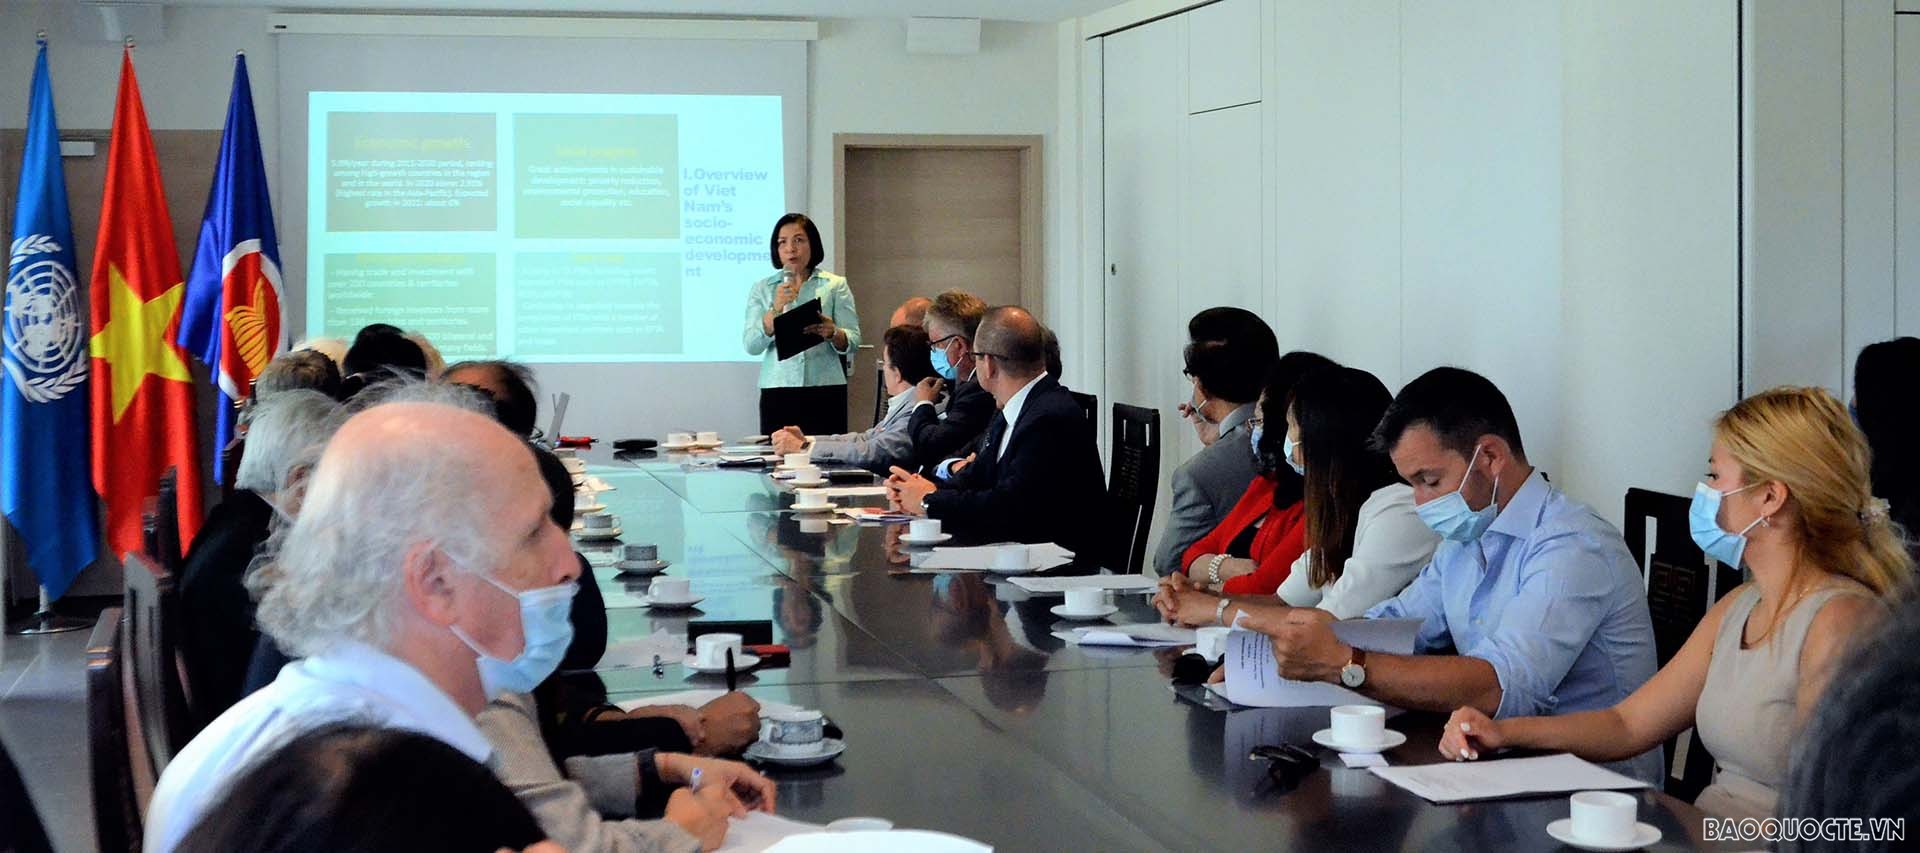 Đại sứ Lê Thị Tuyết Mai, Trưởng Phái đoàn thường trực Việt Nam tại Geneva trình bày tại Tọa đàm với các doanh nghiệp tại bang Geneva, Thụy Sỹ về môi trường kinh doanh ở Việt Nam.